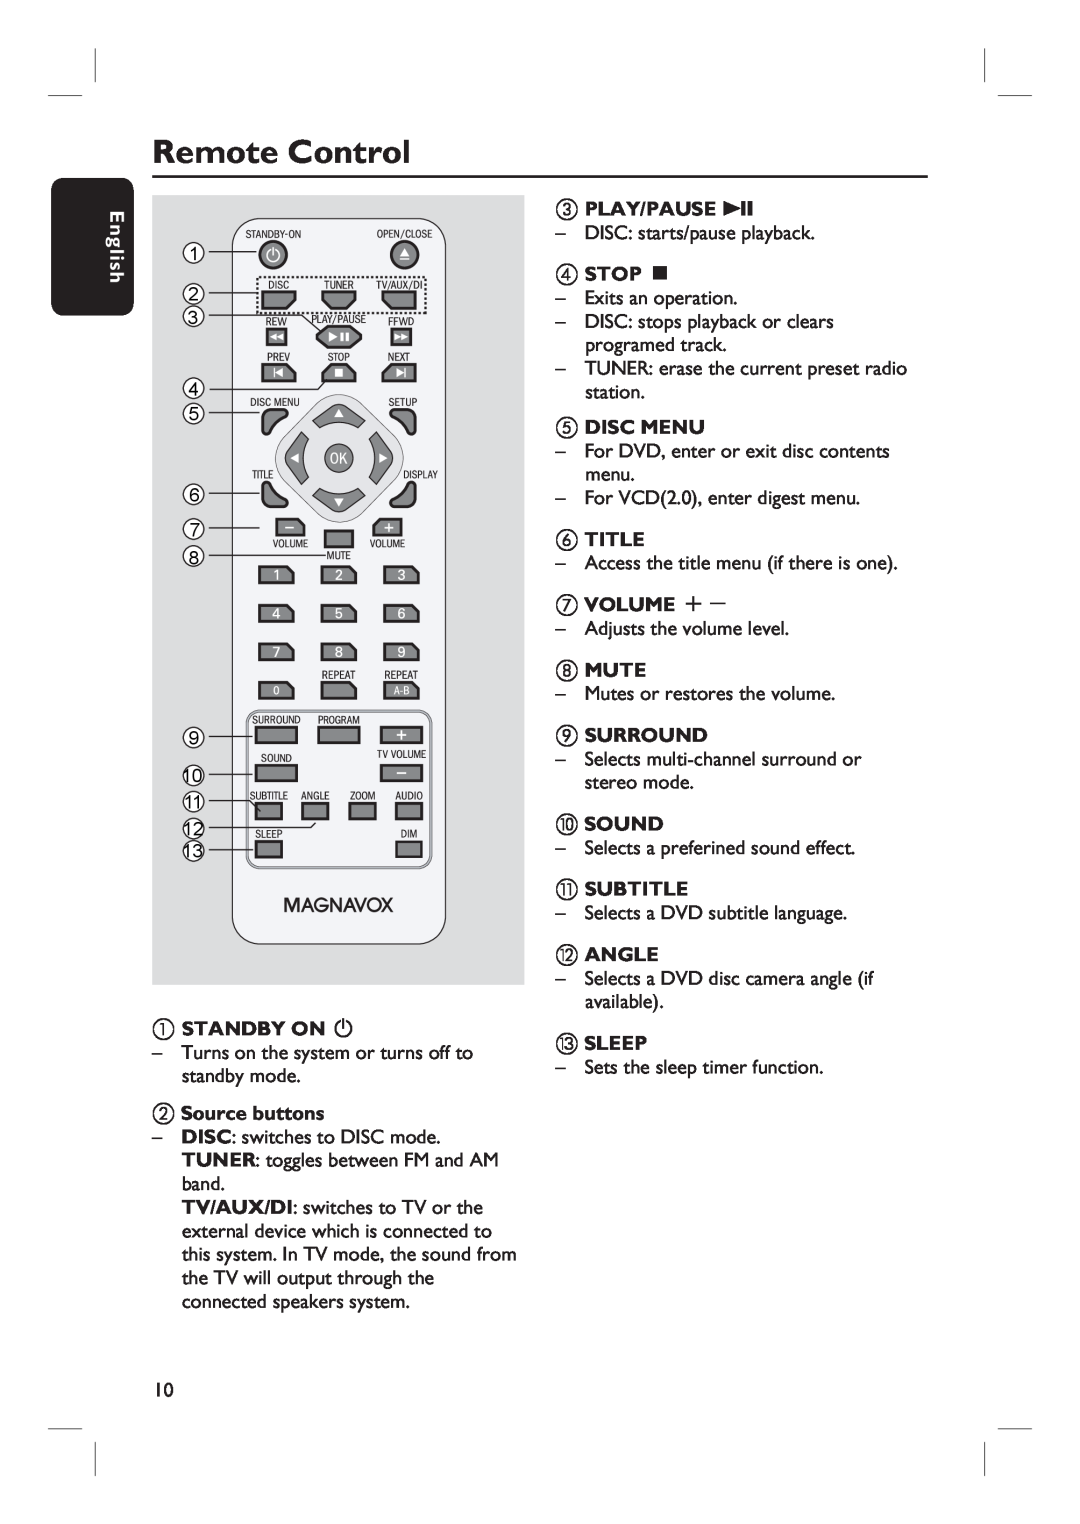 Magnavox MRD100 Remote Control, b Source buttons, c PLAY/PAUSE u, d STOP Ç, e DISC MENU, fTITLE, g VOLUME +, hMUTE, jSOUND 